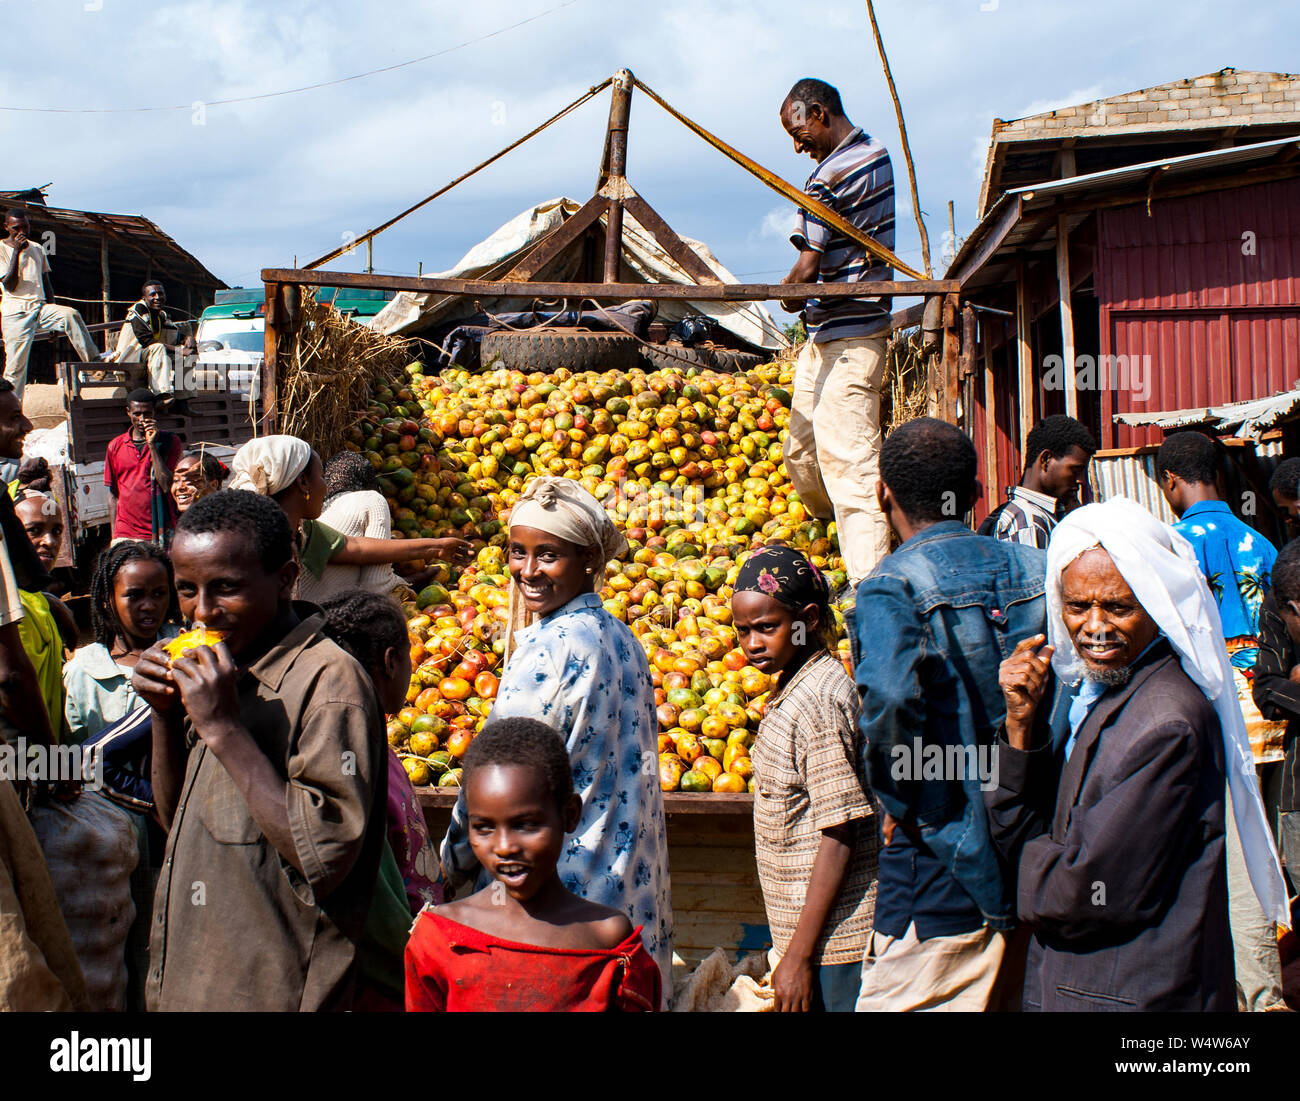 Vente camion mangues entouré par des gens dans un marché rural à Illubabor, Ethiopie Banque D'Images